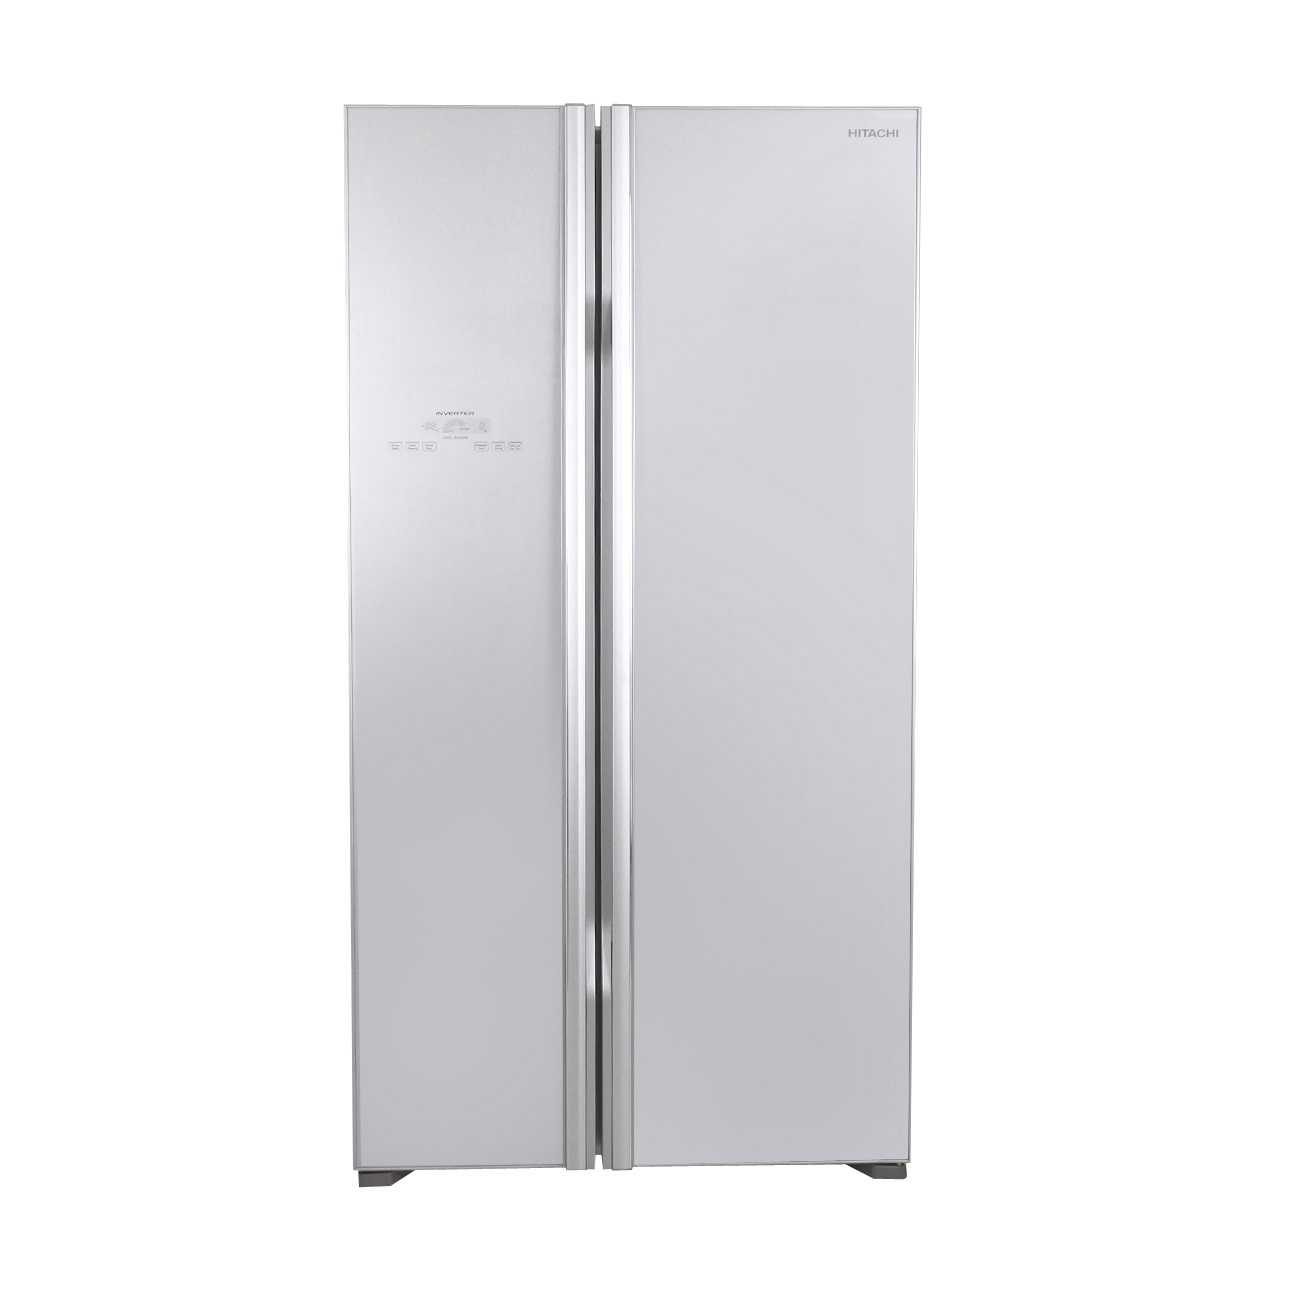 Холодильник (side-by-side) hitachi r-s 702 pu2 gs купить за 175990 руб в екатеринбурге, отзывы, видео обзоры и характеристики